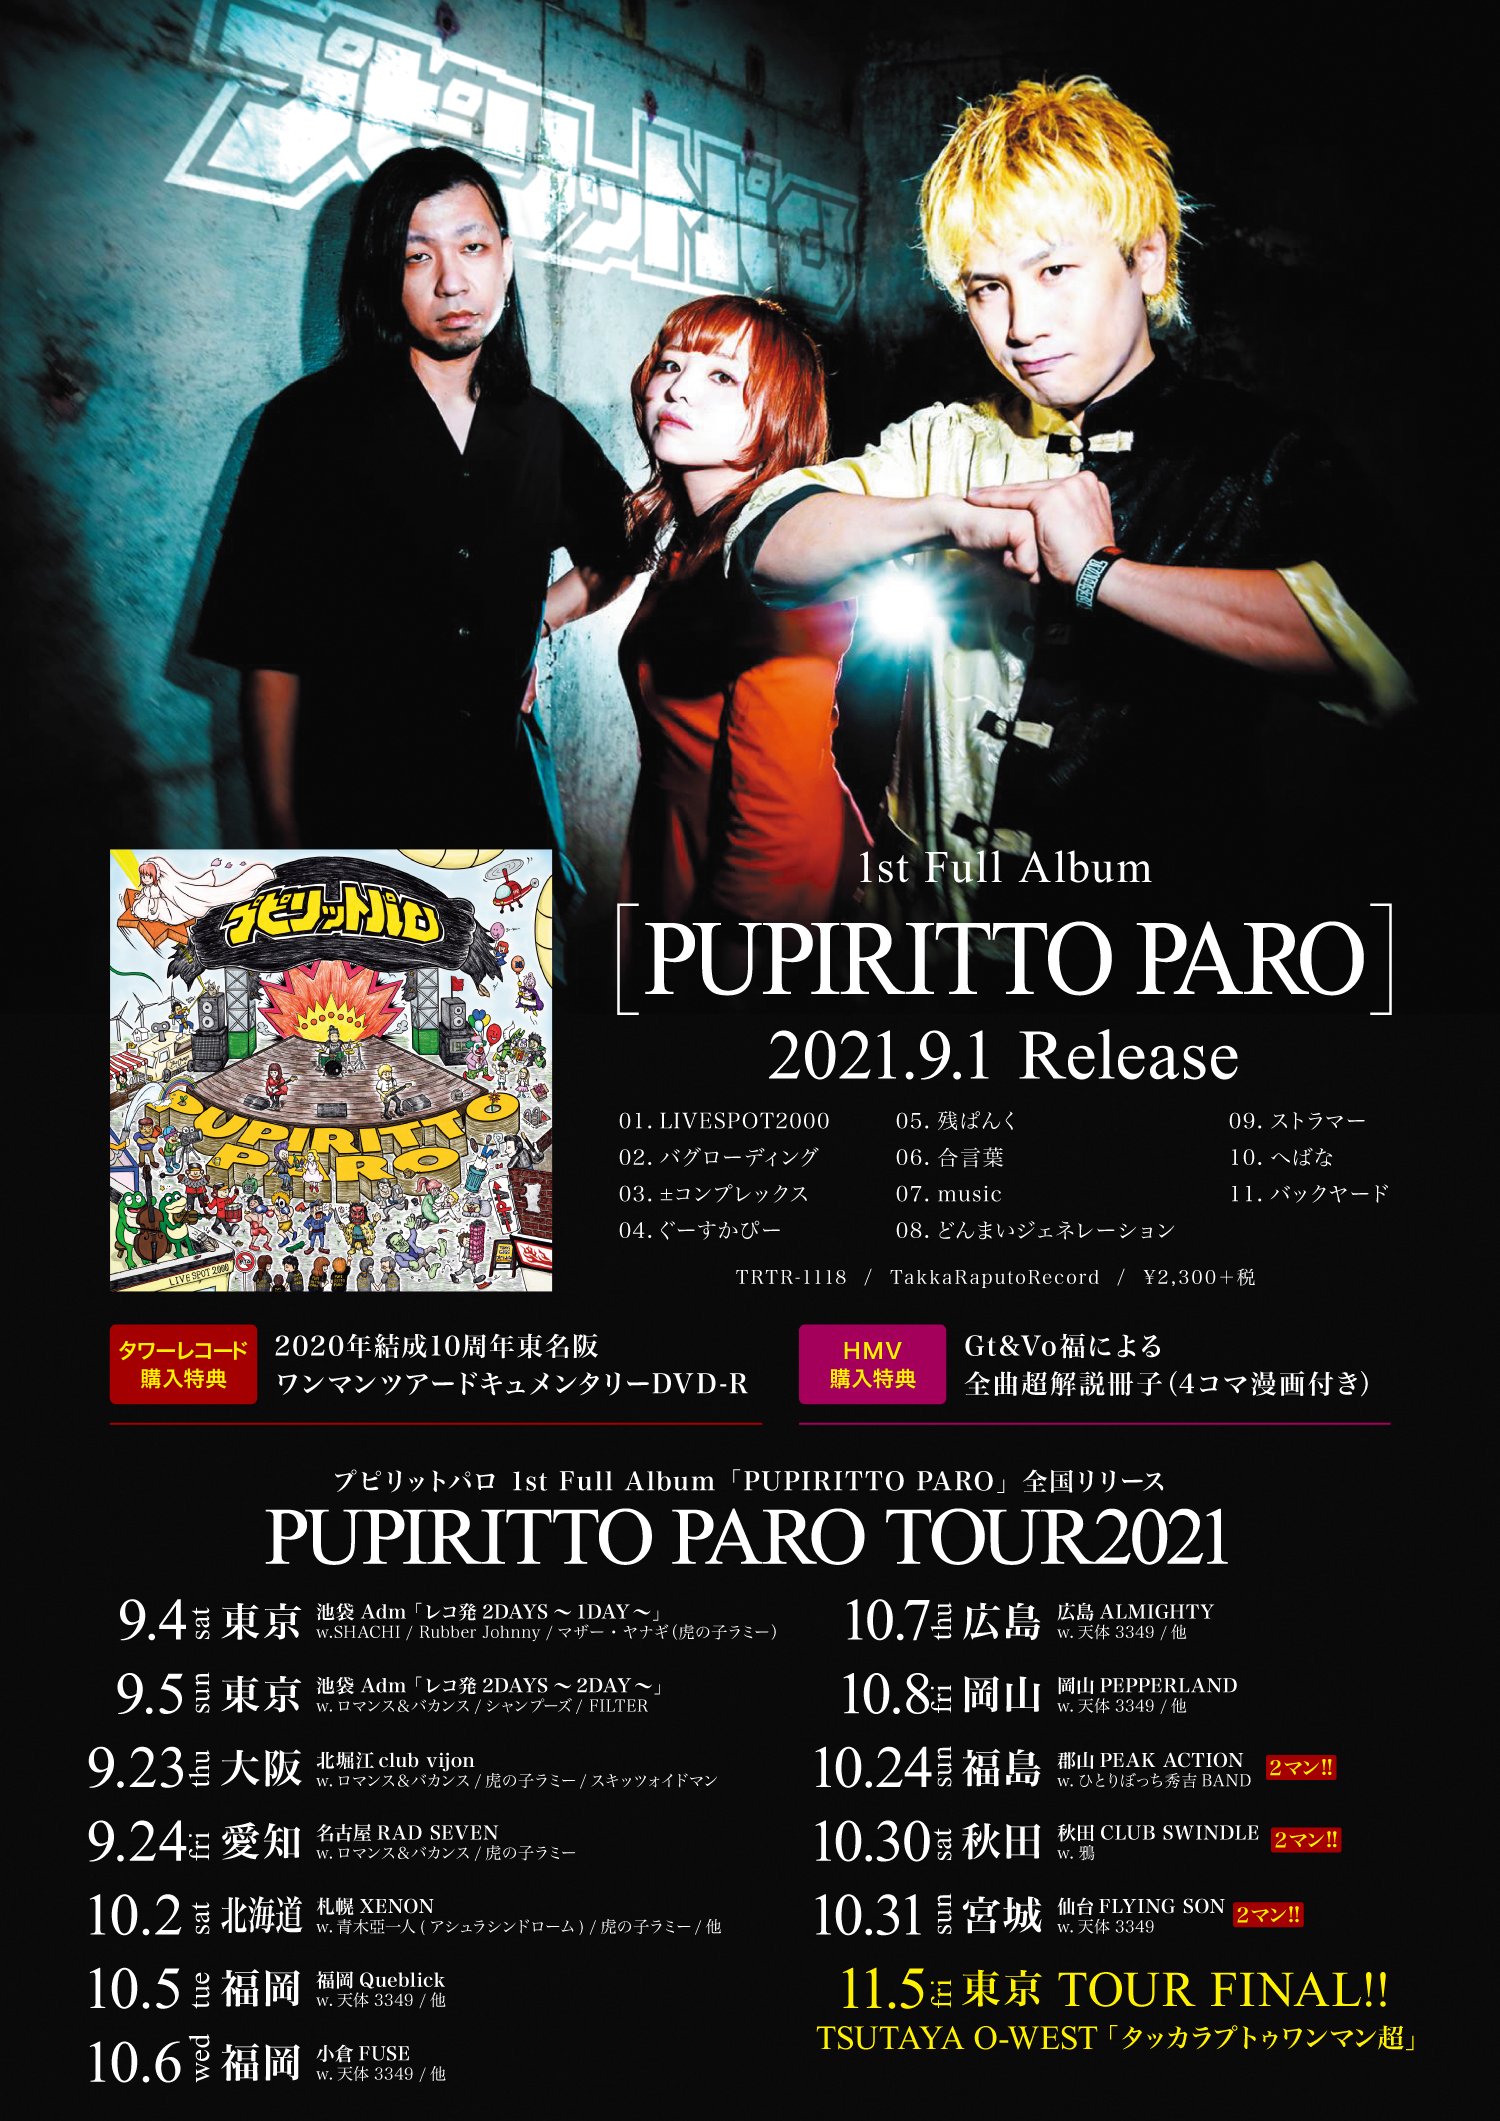 PUPIRITTO PARO TOUR 2021